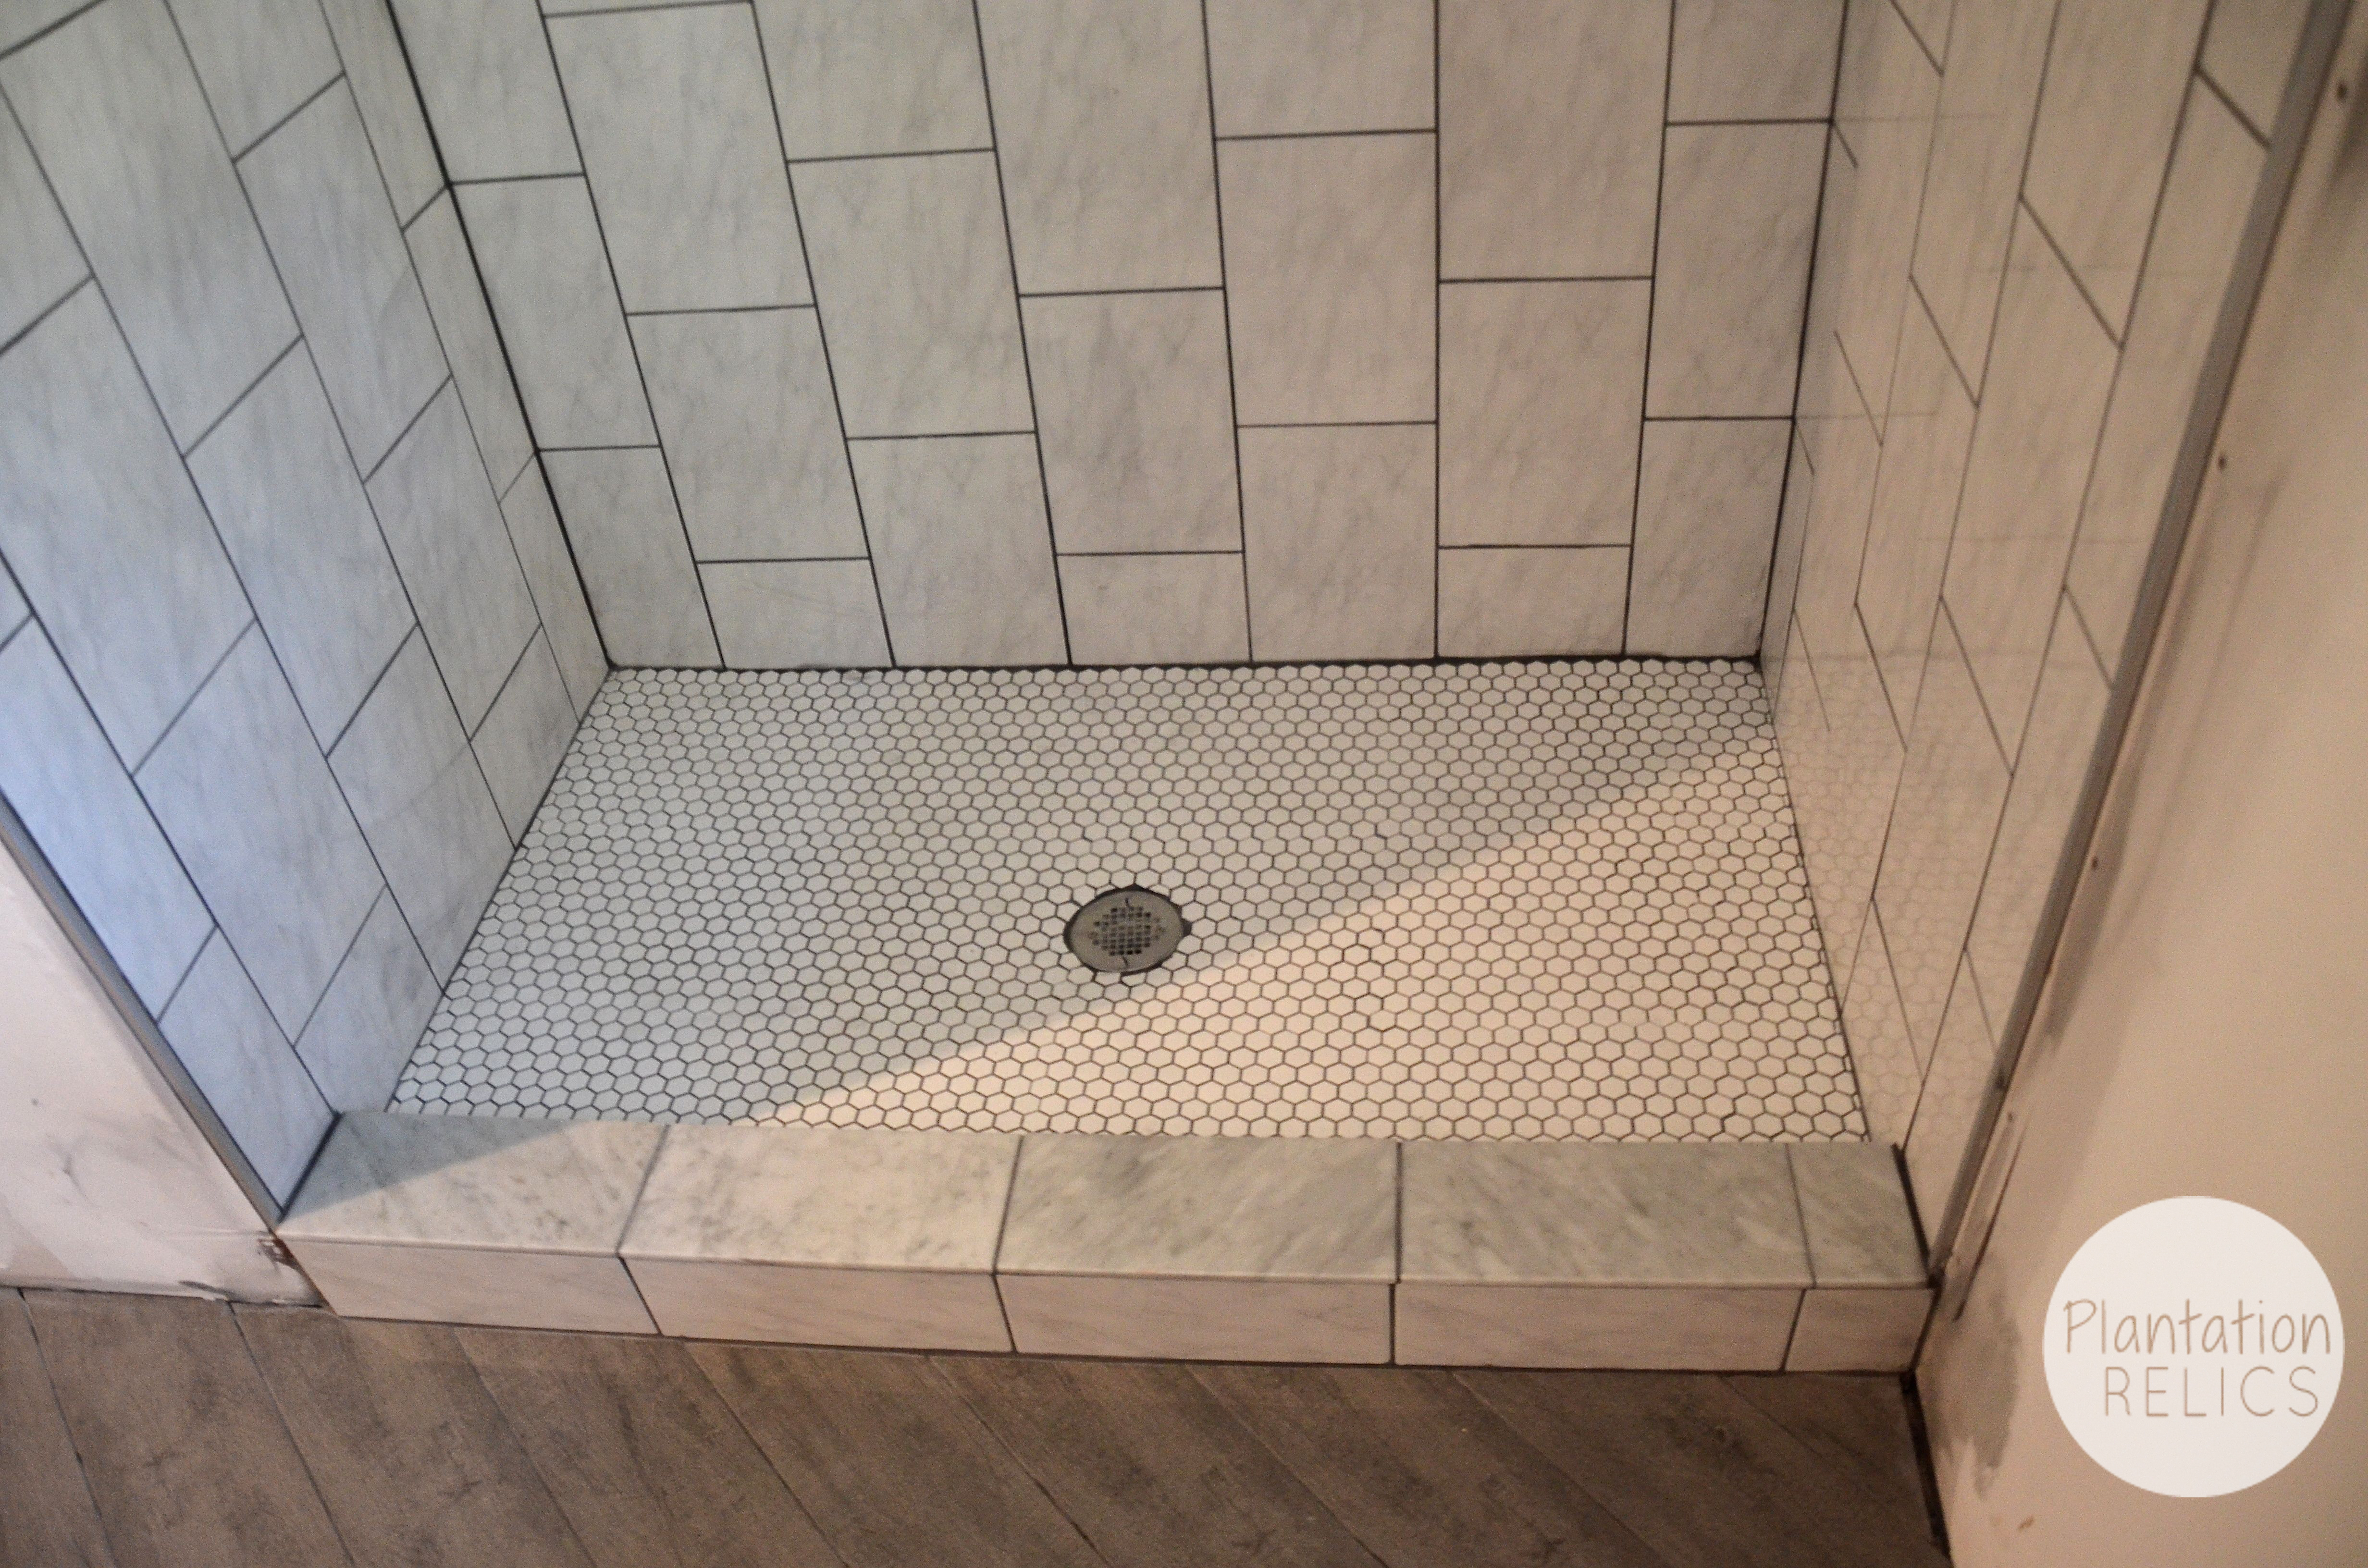 Hall Bath Tile Design –It’s Quite the Transformation.